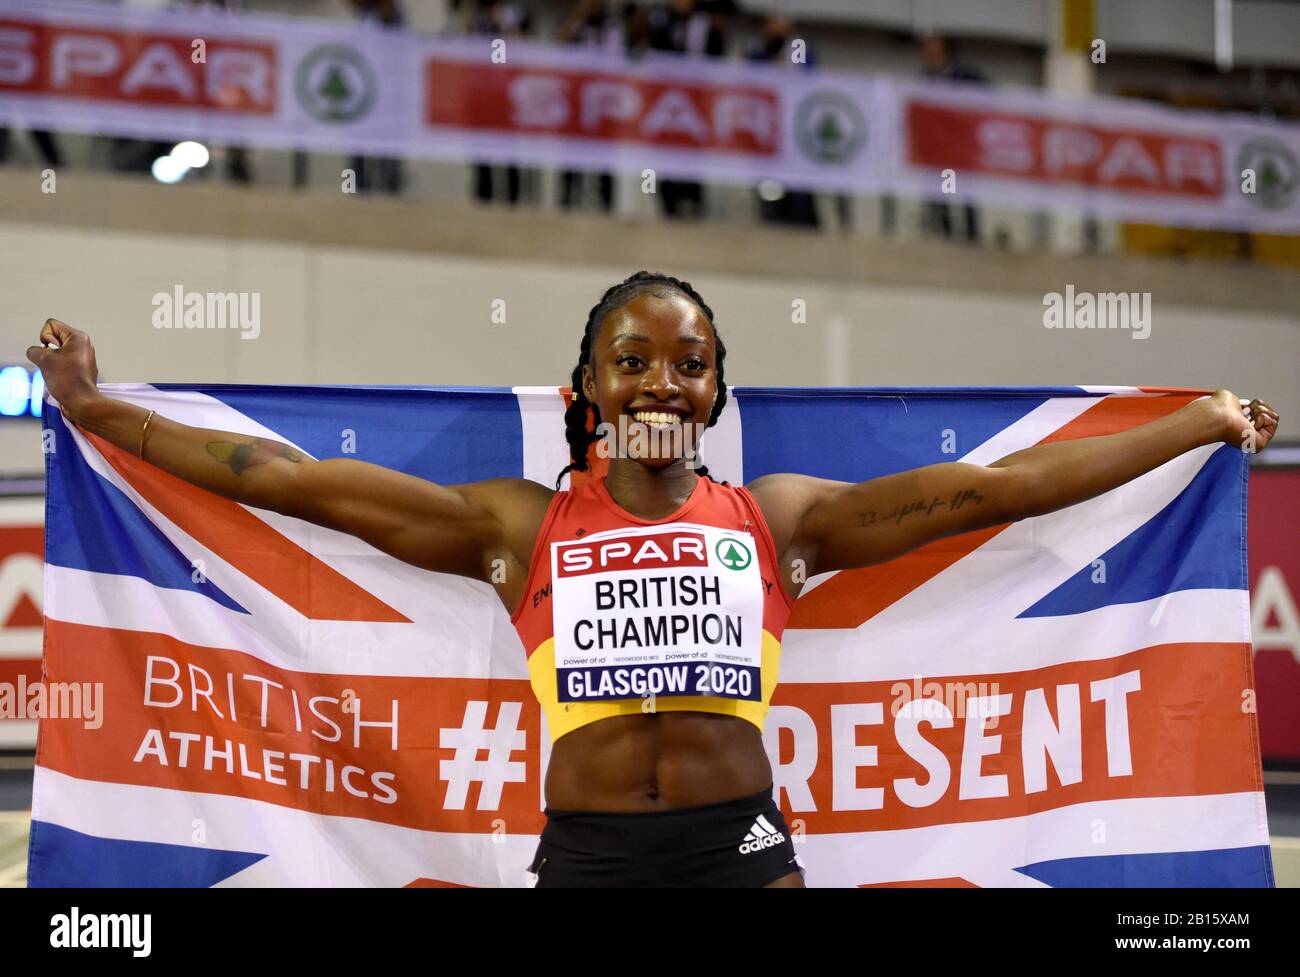 AMA Pipi celebra ganar los 200 m de mujeres durante el segundo día del campeonato de atletismo de SPAR British en Emirates Arena, Glasgow. Foto de stock